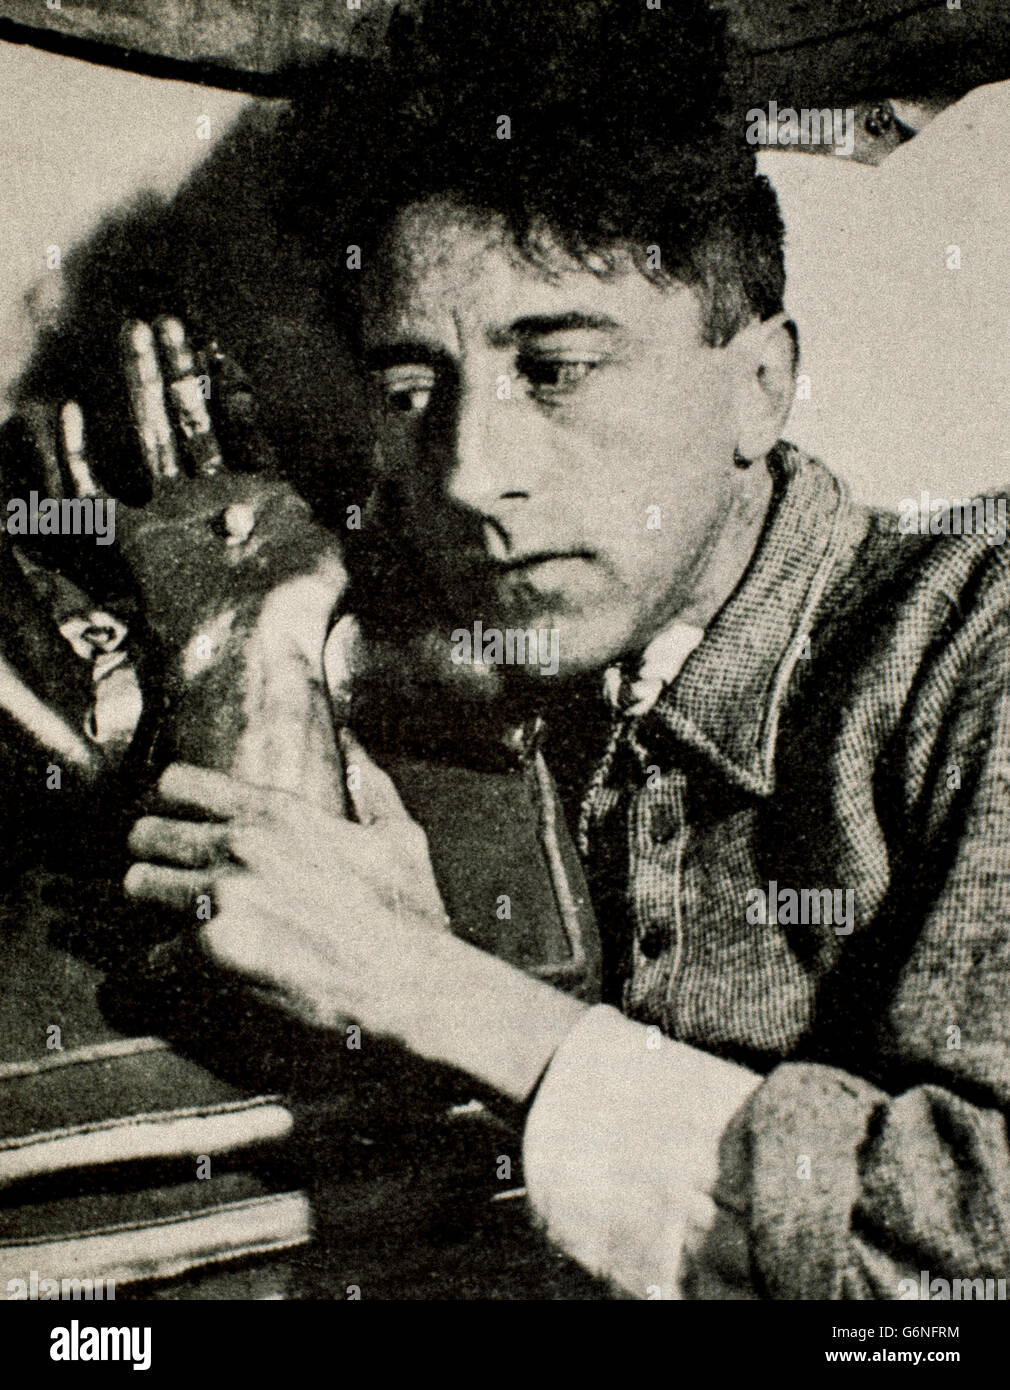 Jean Maurice Eugène Clément Cocteau (Maisons-Laffitte, 5 luglio 1889 - Milly-la-Forêt, 11 ottobre 1963) è stato un poeta e saggista, drammaturgo, sceneggiatore, artista, scrittore e librettista, regista e attore francese Foto Stock